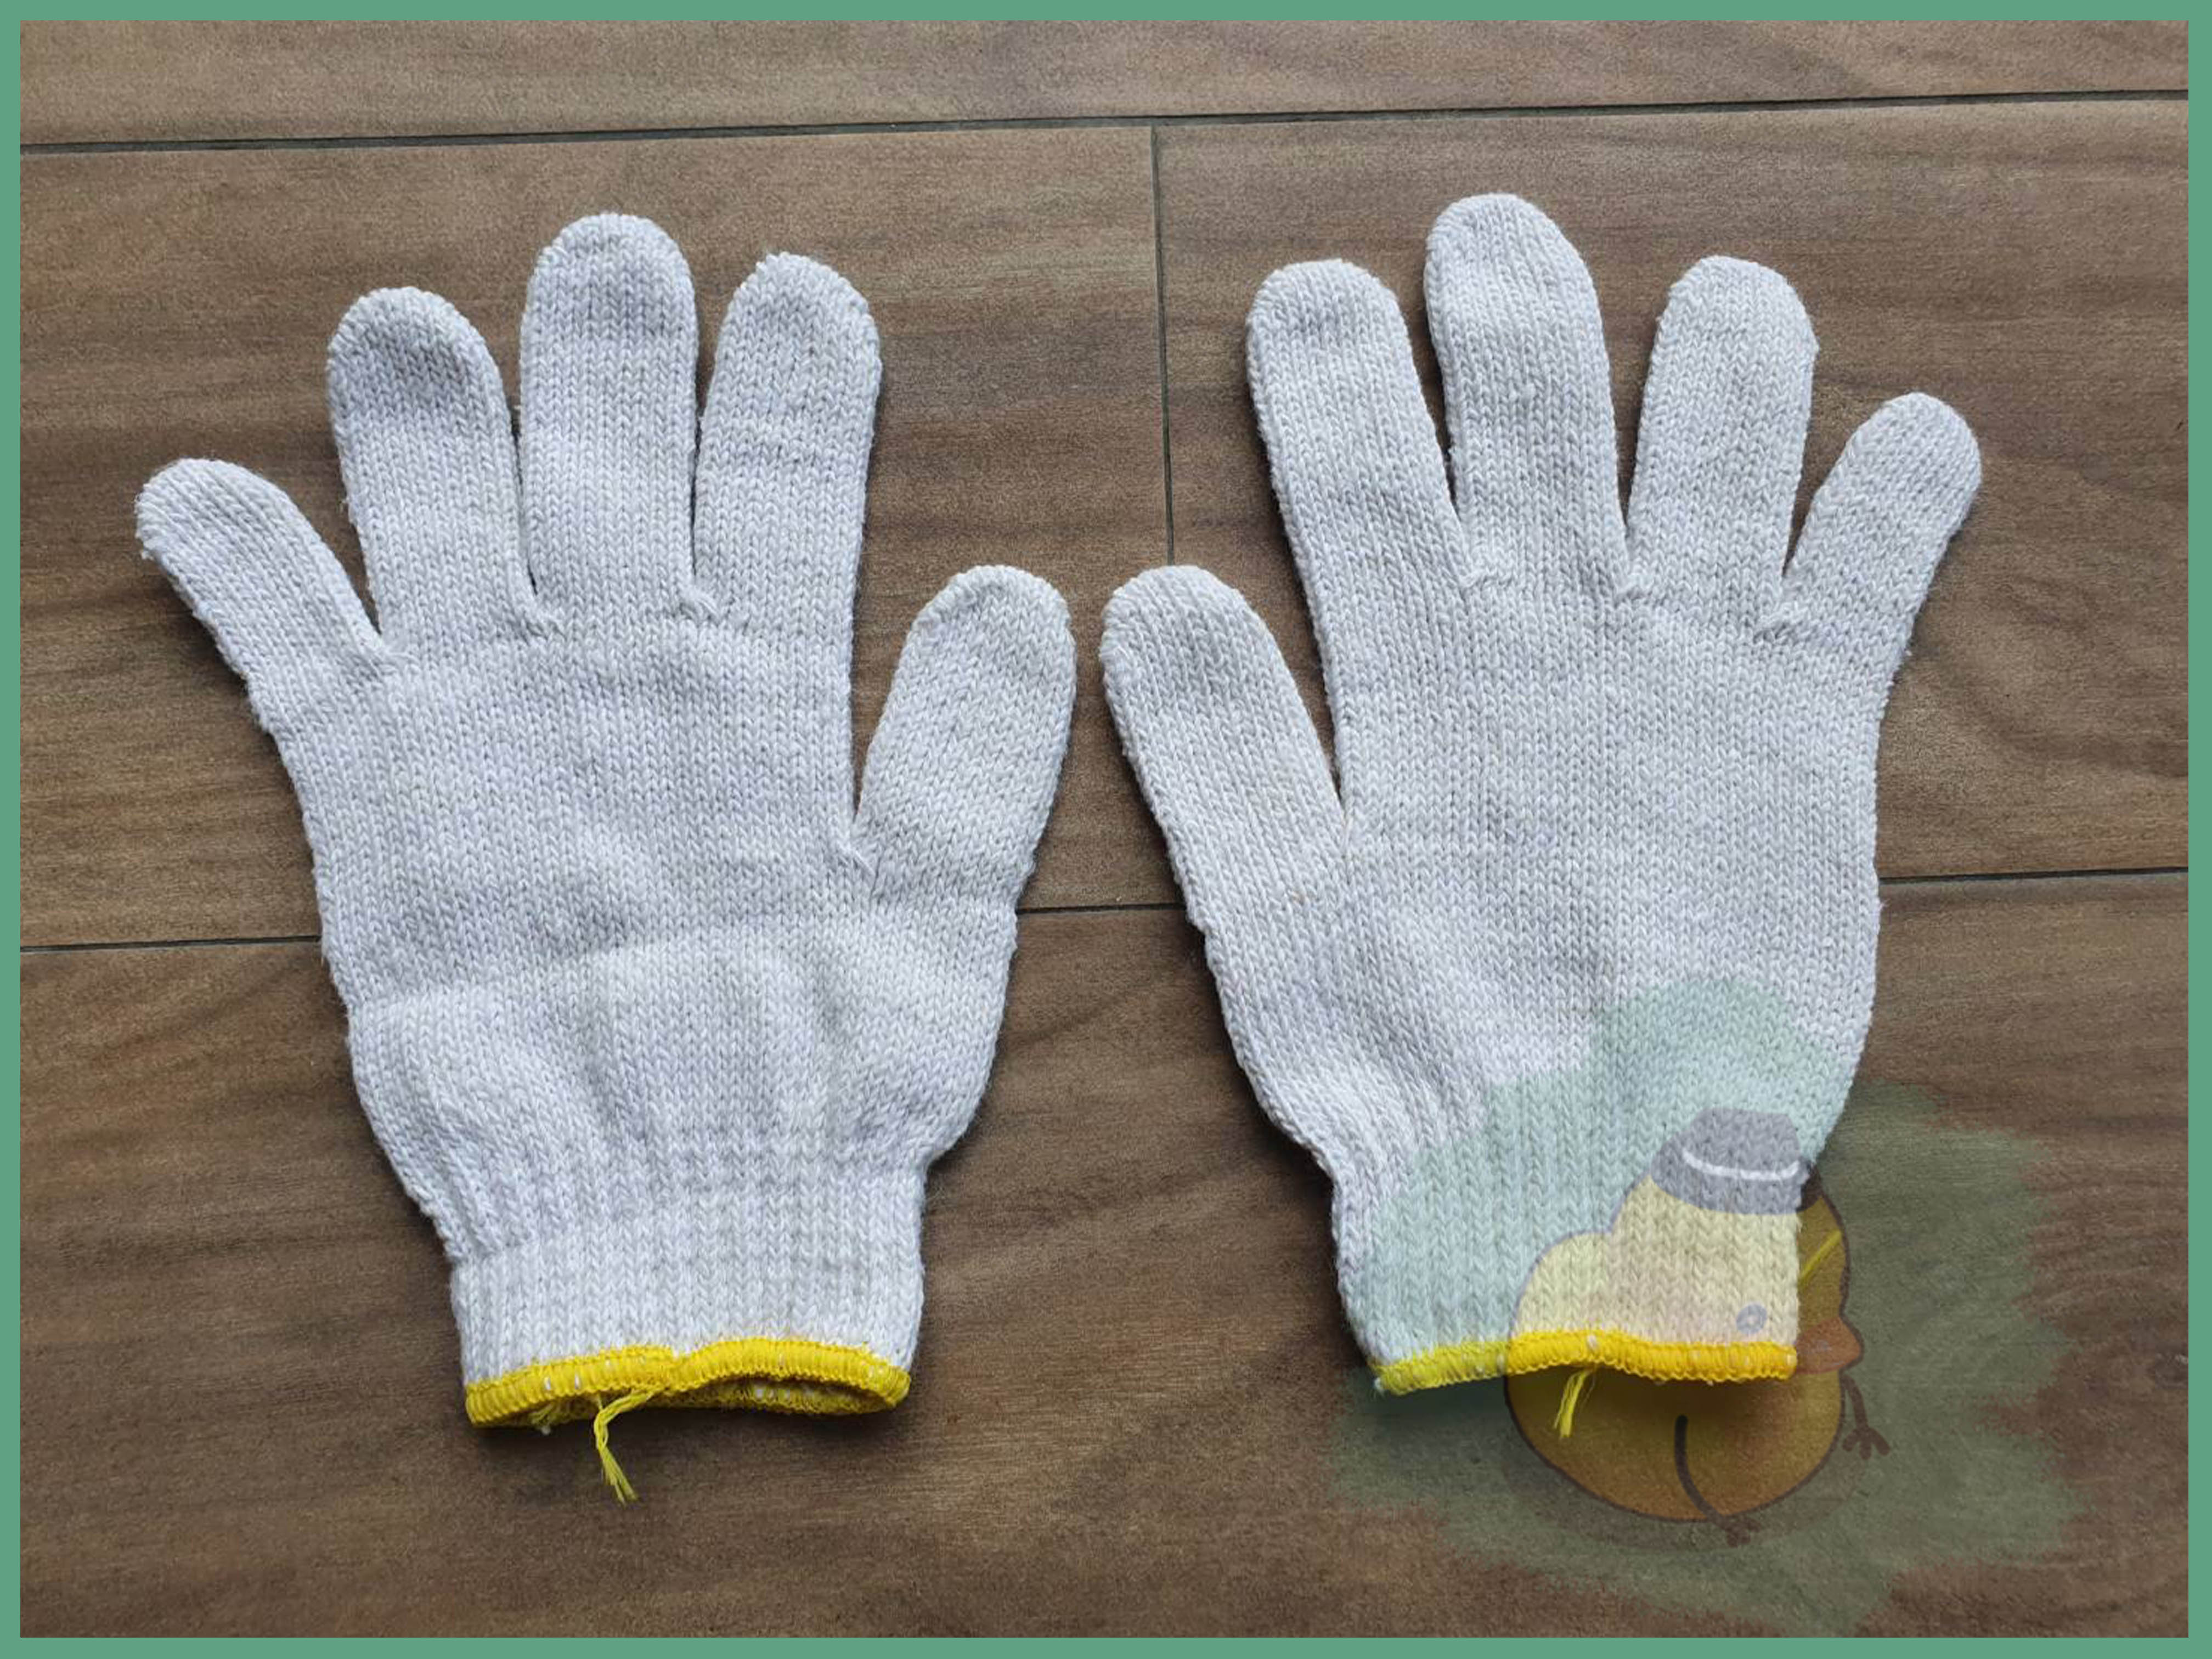 ถุงมือผ้าอย่างหนา ถุงมือ 7 ขีด (ยกโหล 12 คู่) ถุงมือผ้าสีขาวอย่างหนาขอบเหลือง